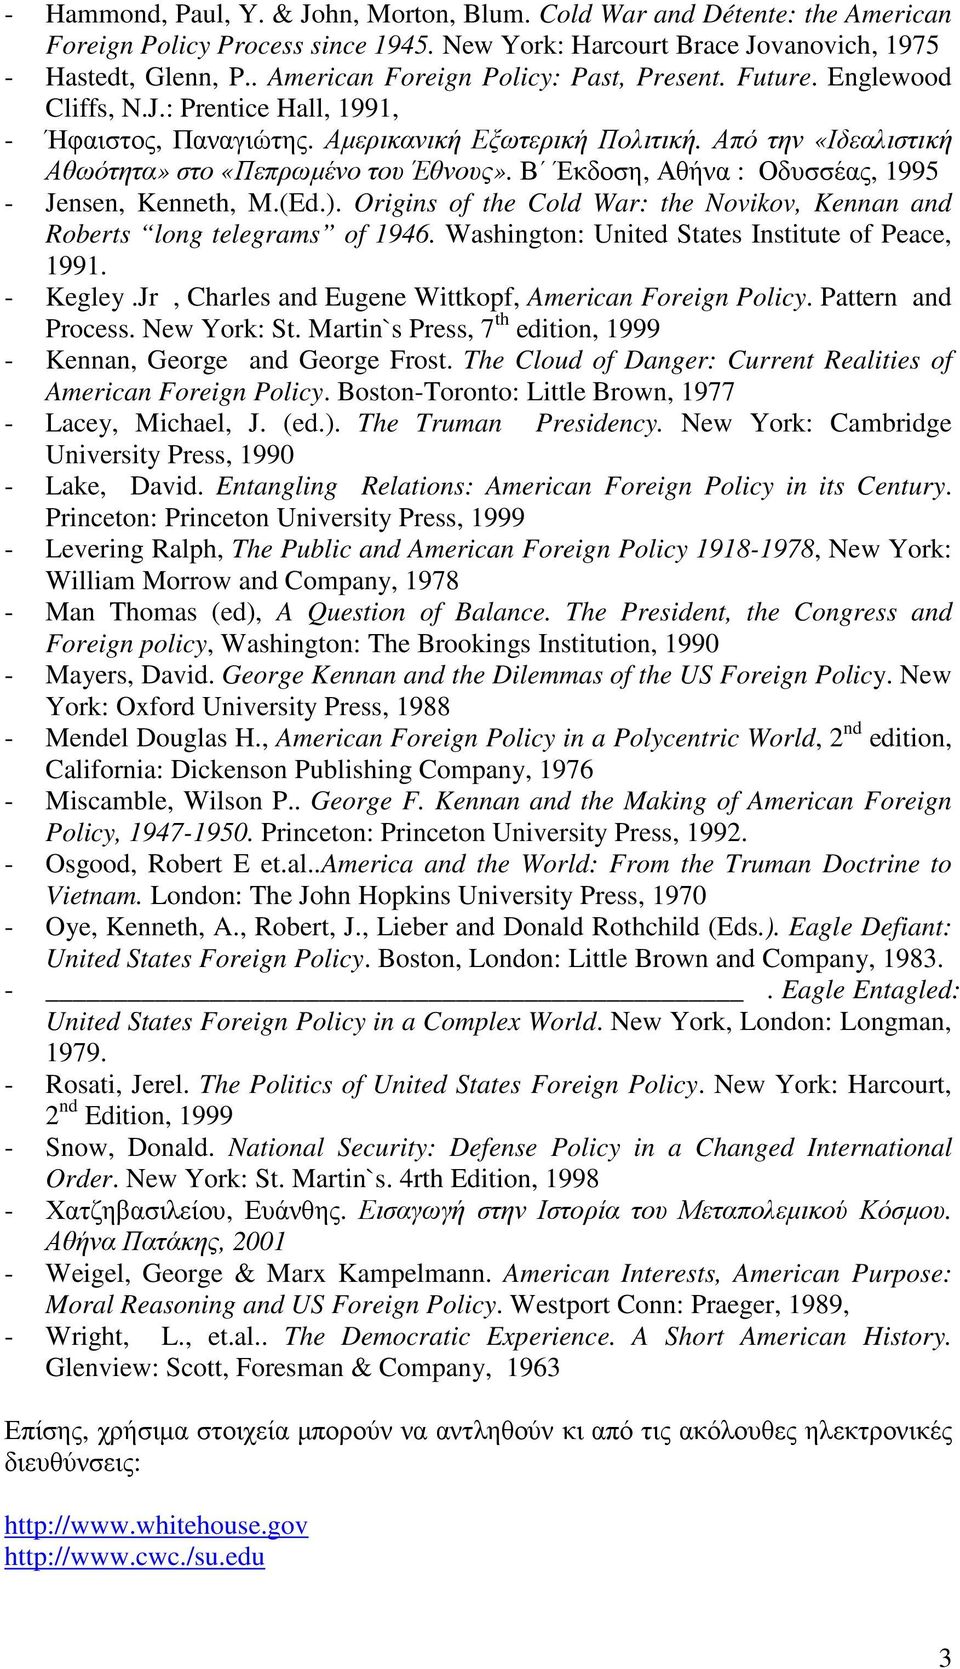 Από την «Ιδεαλιστική Αθωότητα» στο «Πεπρωµένο του Έθνους». Β Έκδοση, Αθήνα : Οδυσσέας, 1995 - Jensen, Kenneth, M.(Ed.). Origins of the Cold War: the Novikov, Kennan and Roberts long telegrams of 1946.